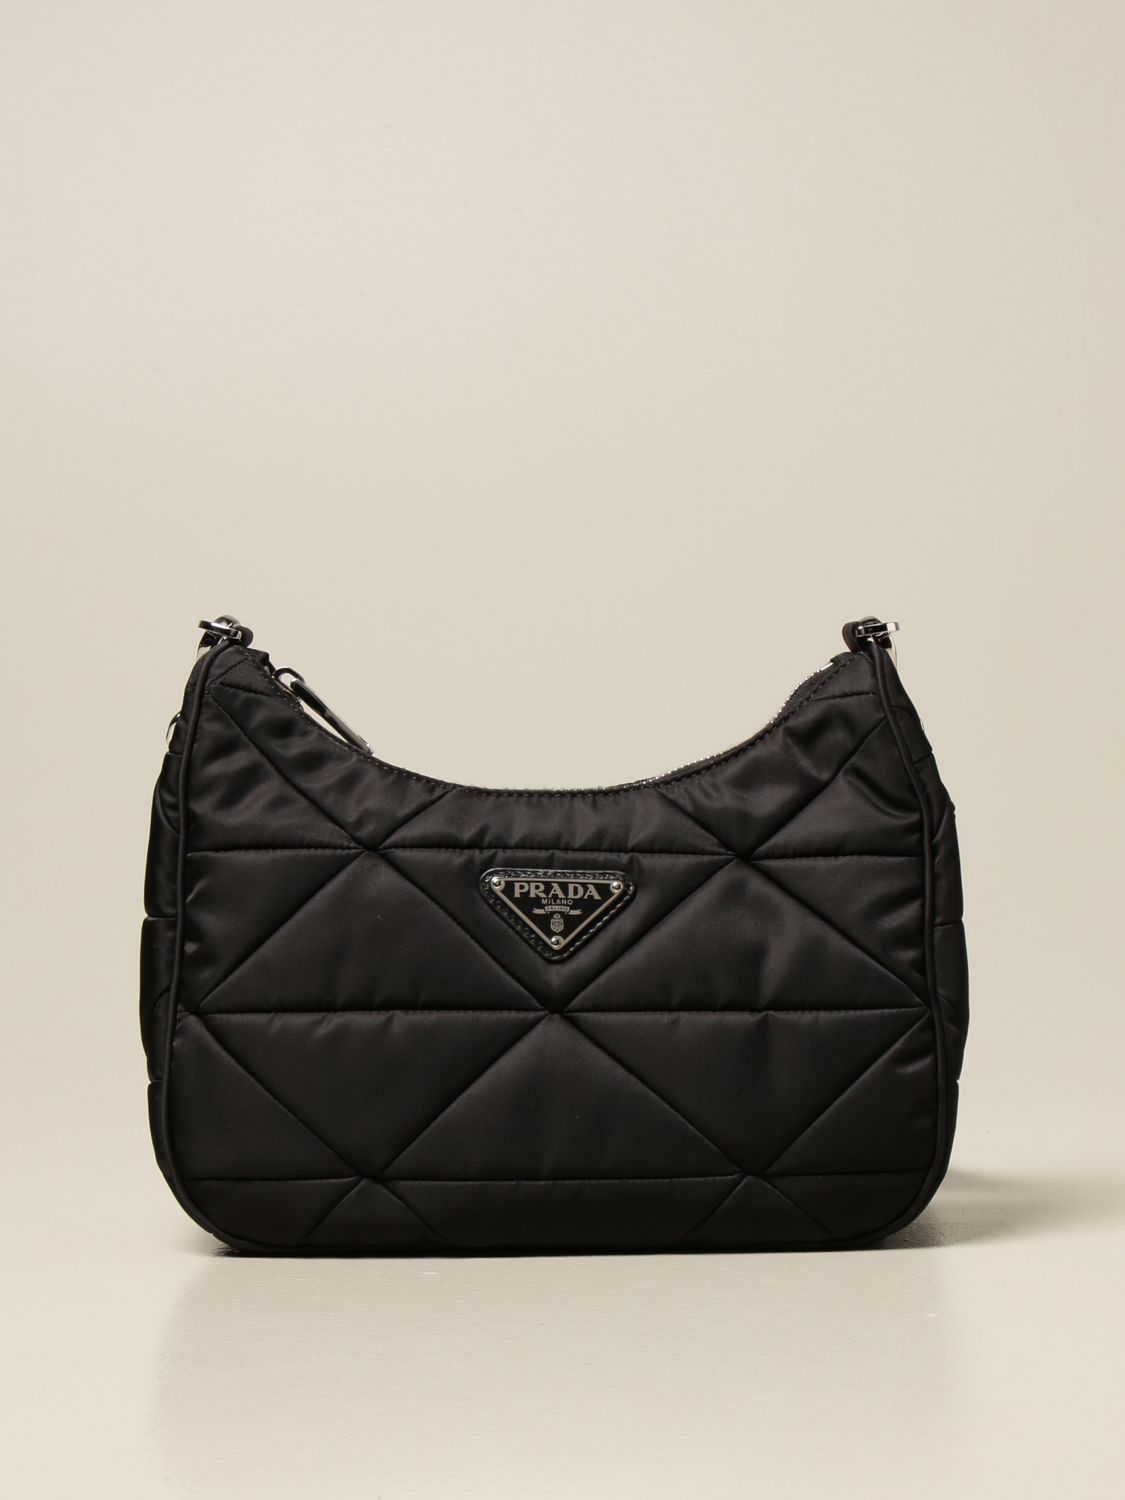 PRADA: crossbody bag in quilted nylon - Black | Prada handbag 1BC151 ...